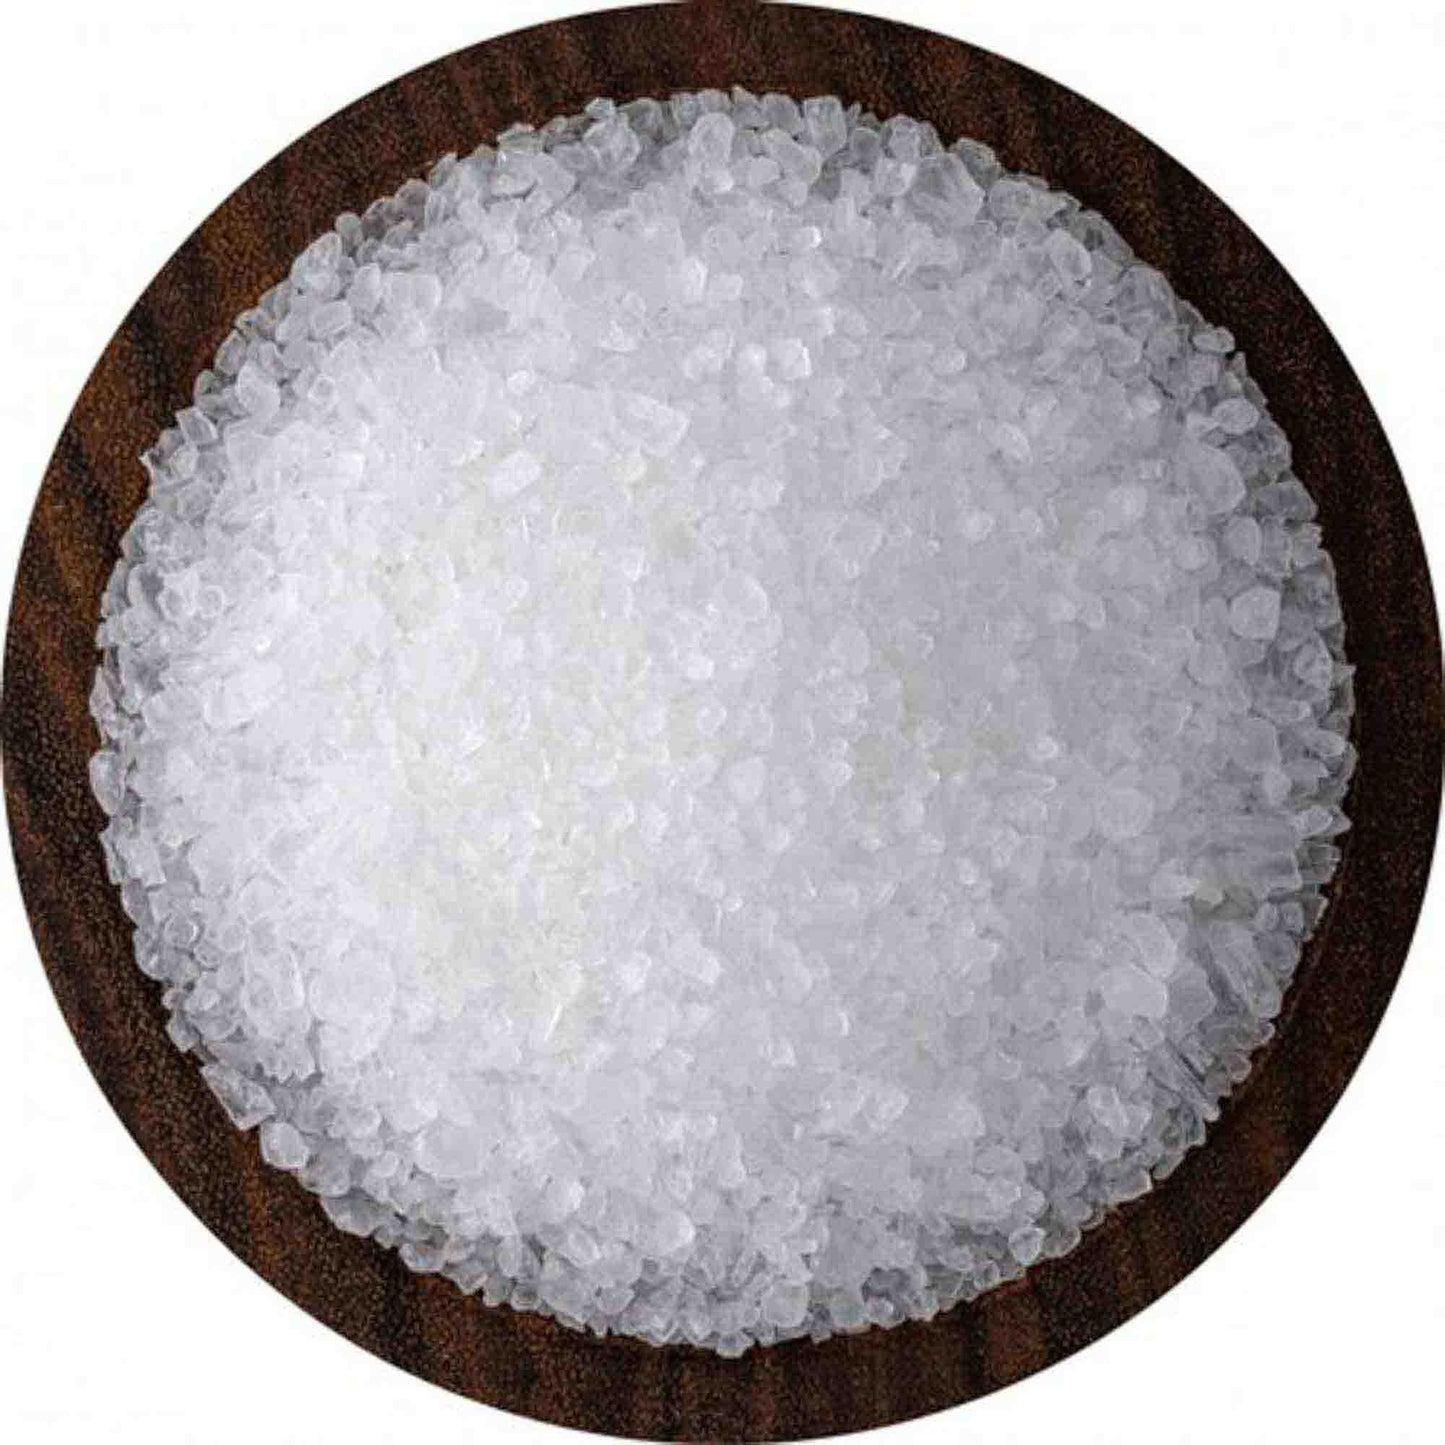 Thoothukudi Sea Salt Crystal 1 kg